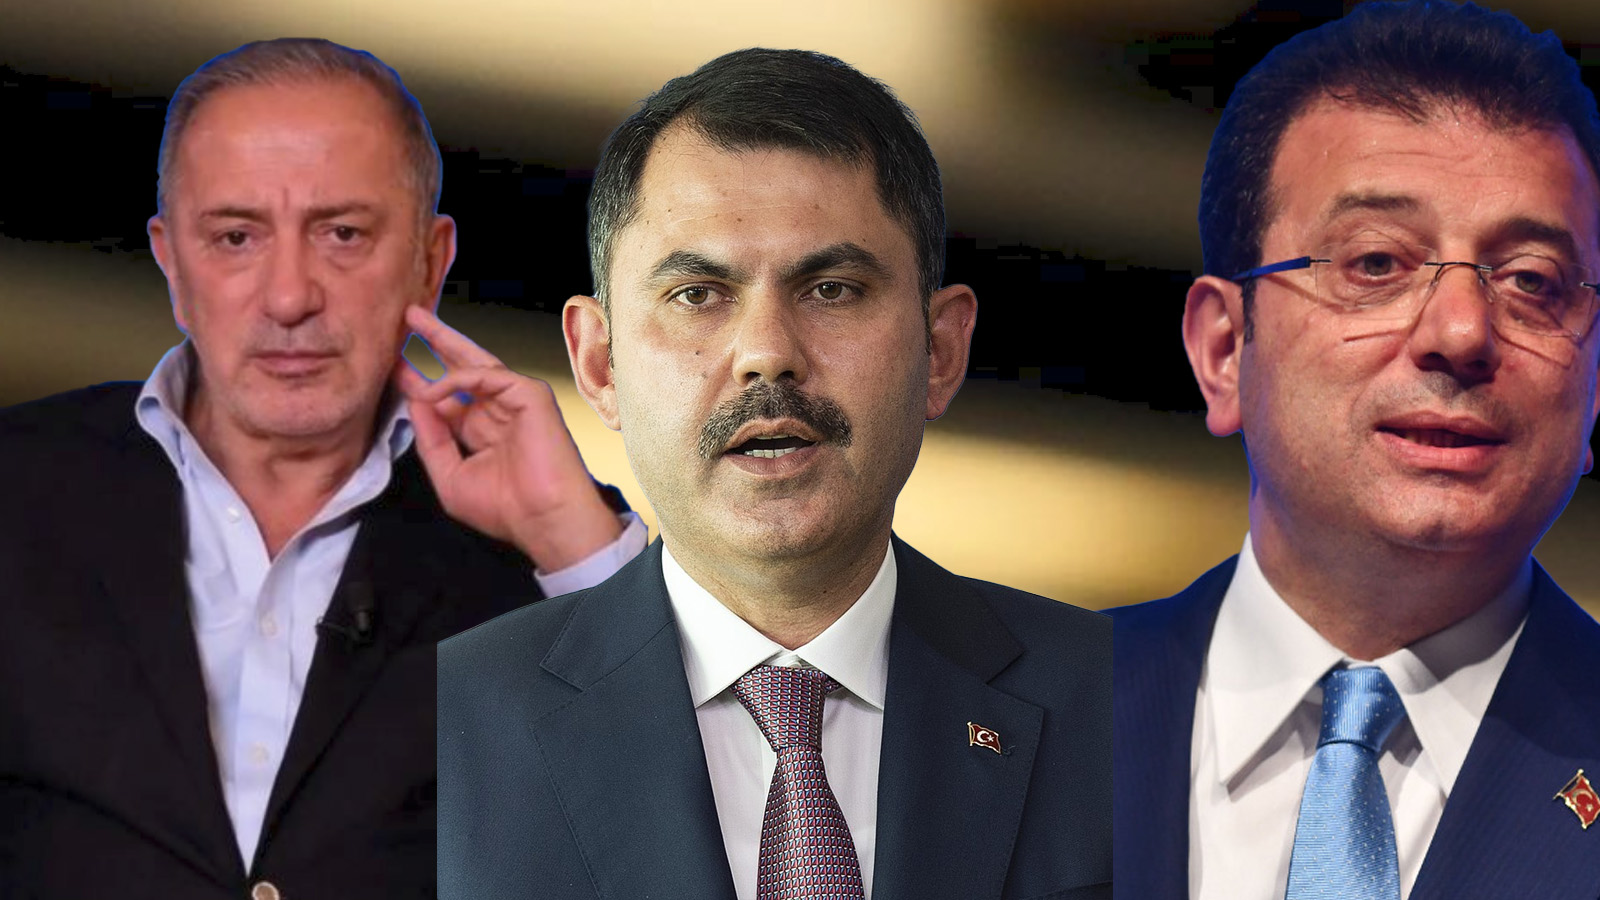 Altaylı: Belediye yönetiminde İmamoğlu daha halkçı, Kurum daha tarikatçı tavır sergiliyor